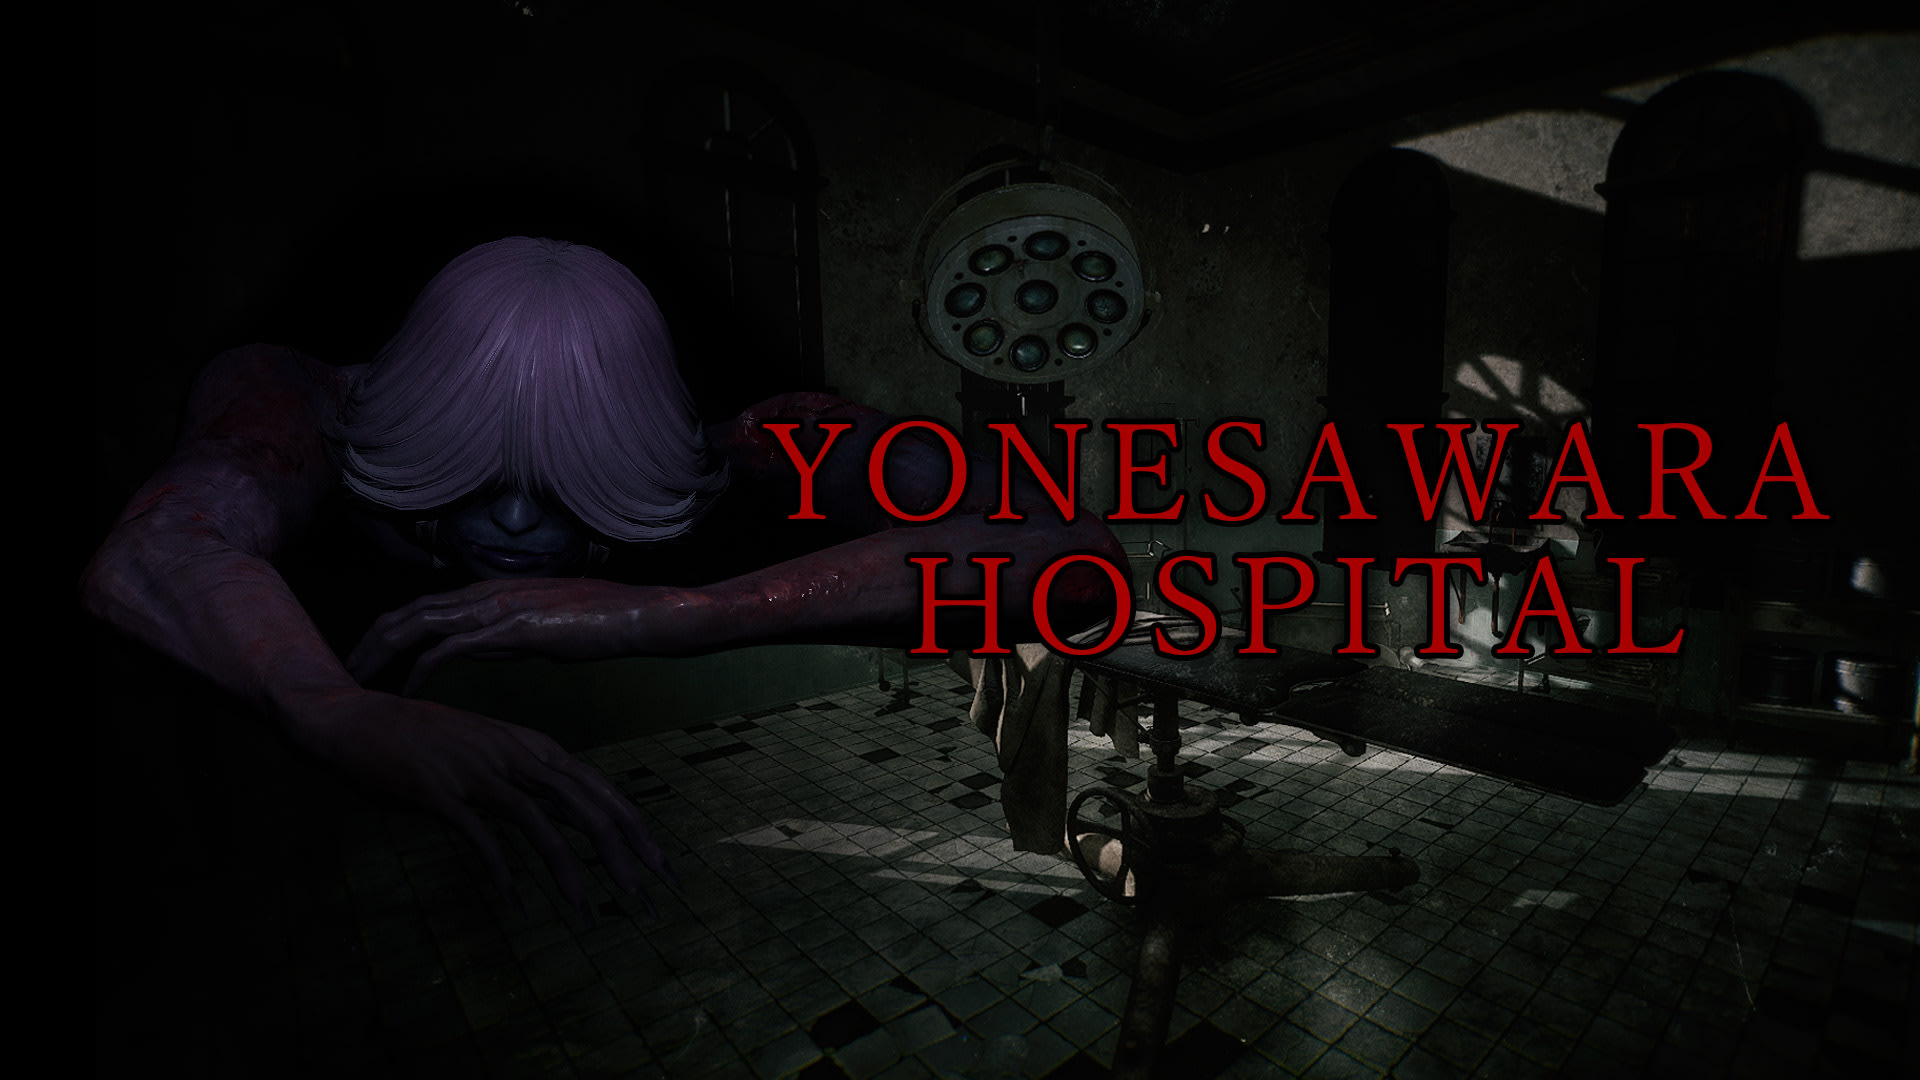 YONESAWARA HOSPITAL